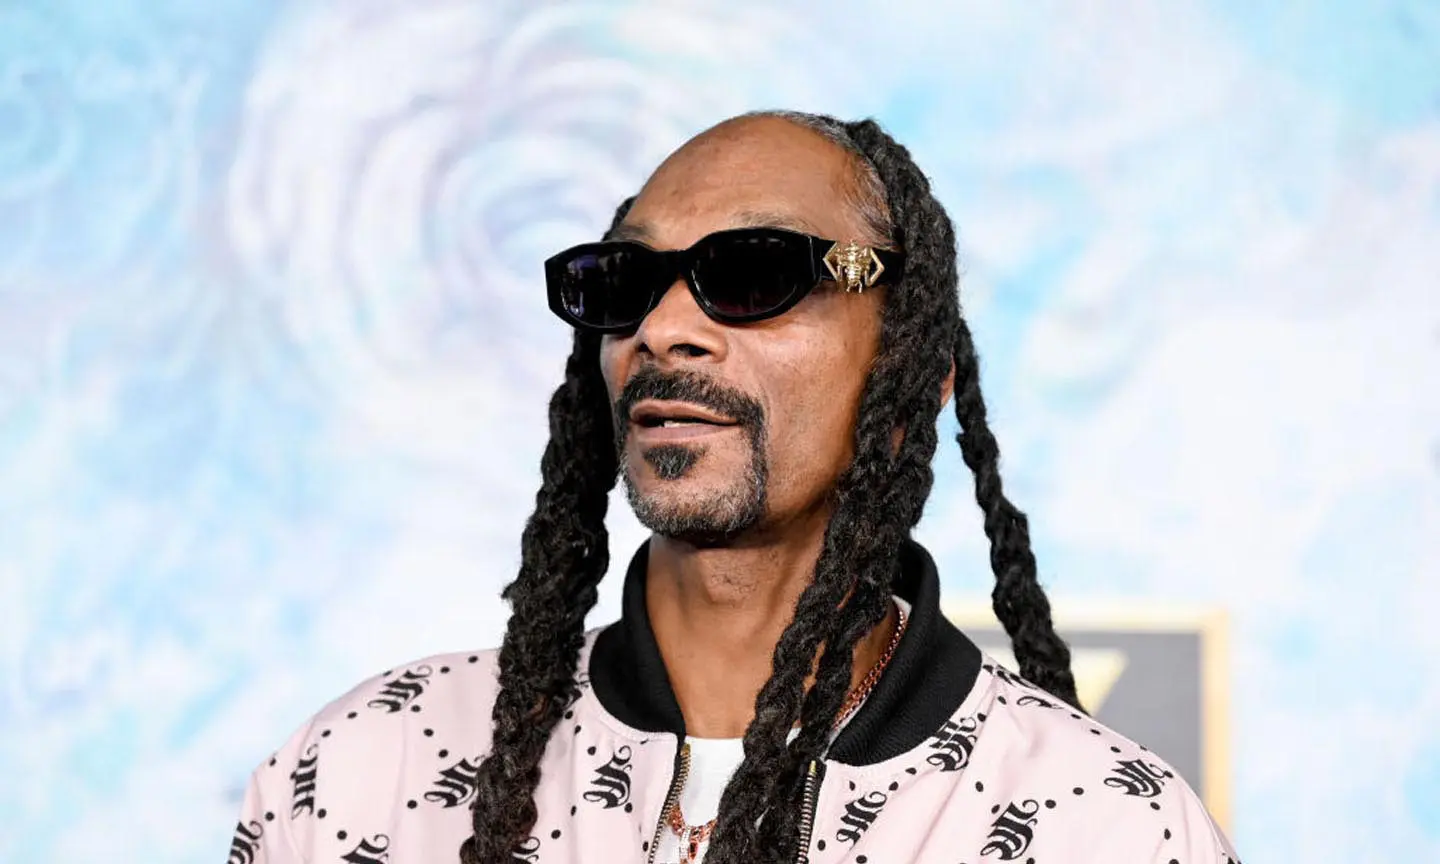 美国说唱歌手Snoop Dogg(史努比狗狗)1990-2023年发行专辑、精选辑、单曲合集[无损FLAC/43GB]百度云盘打包下载 影音资源 第2张